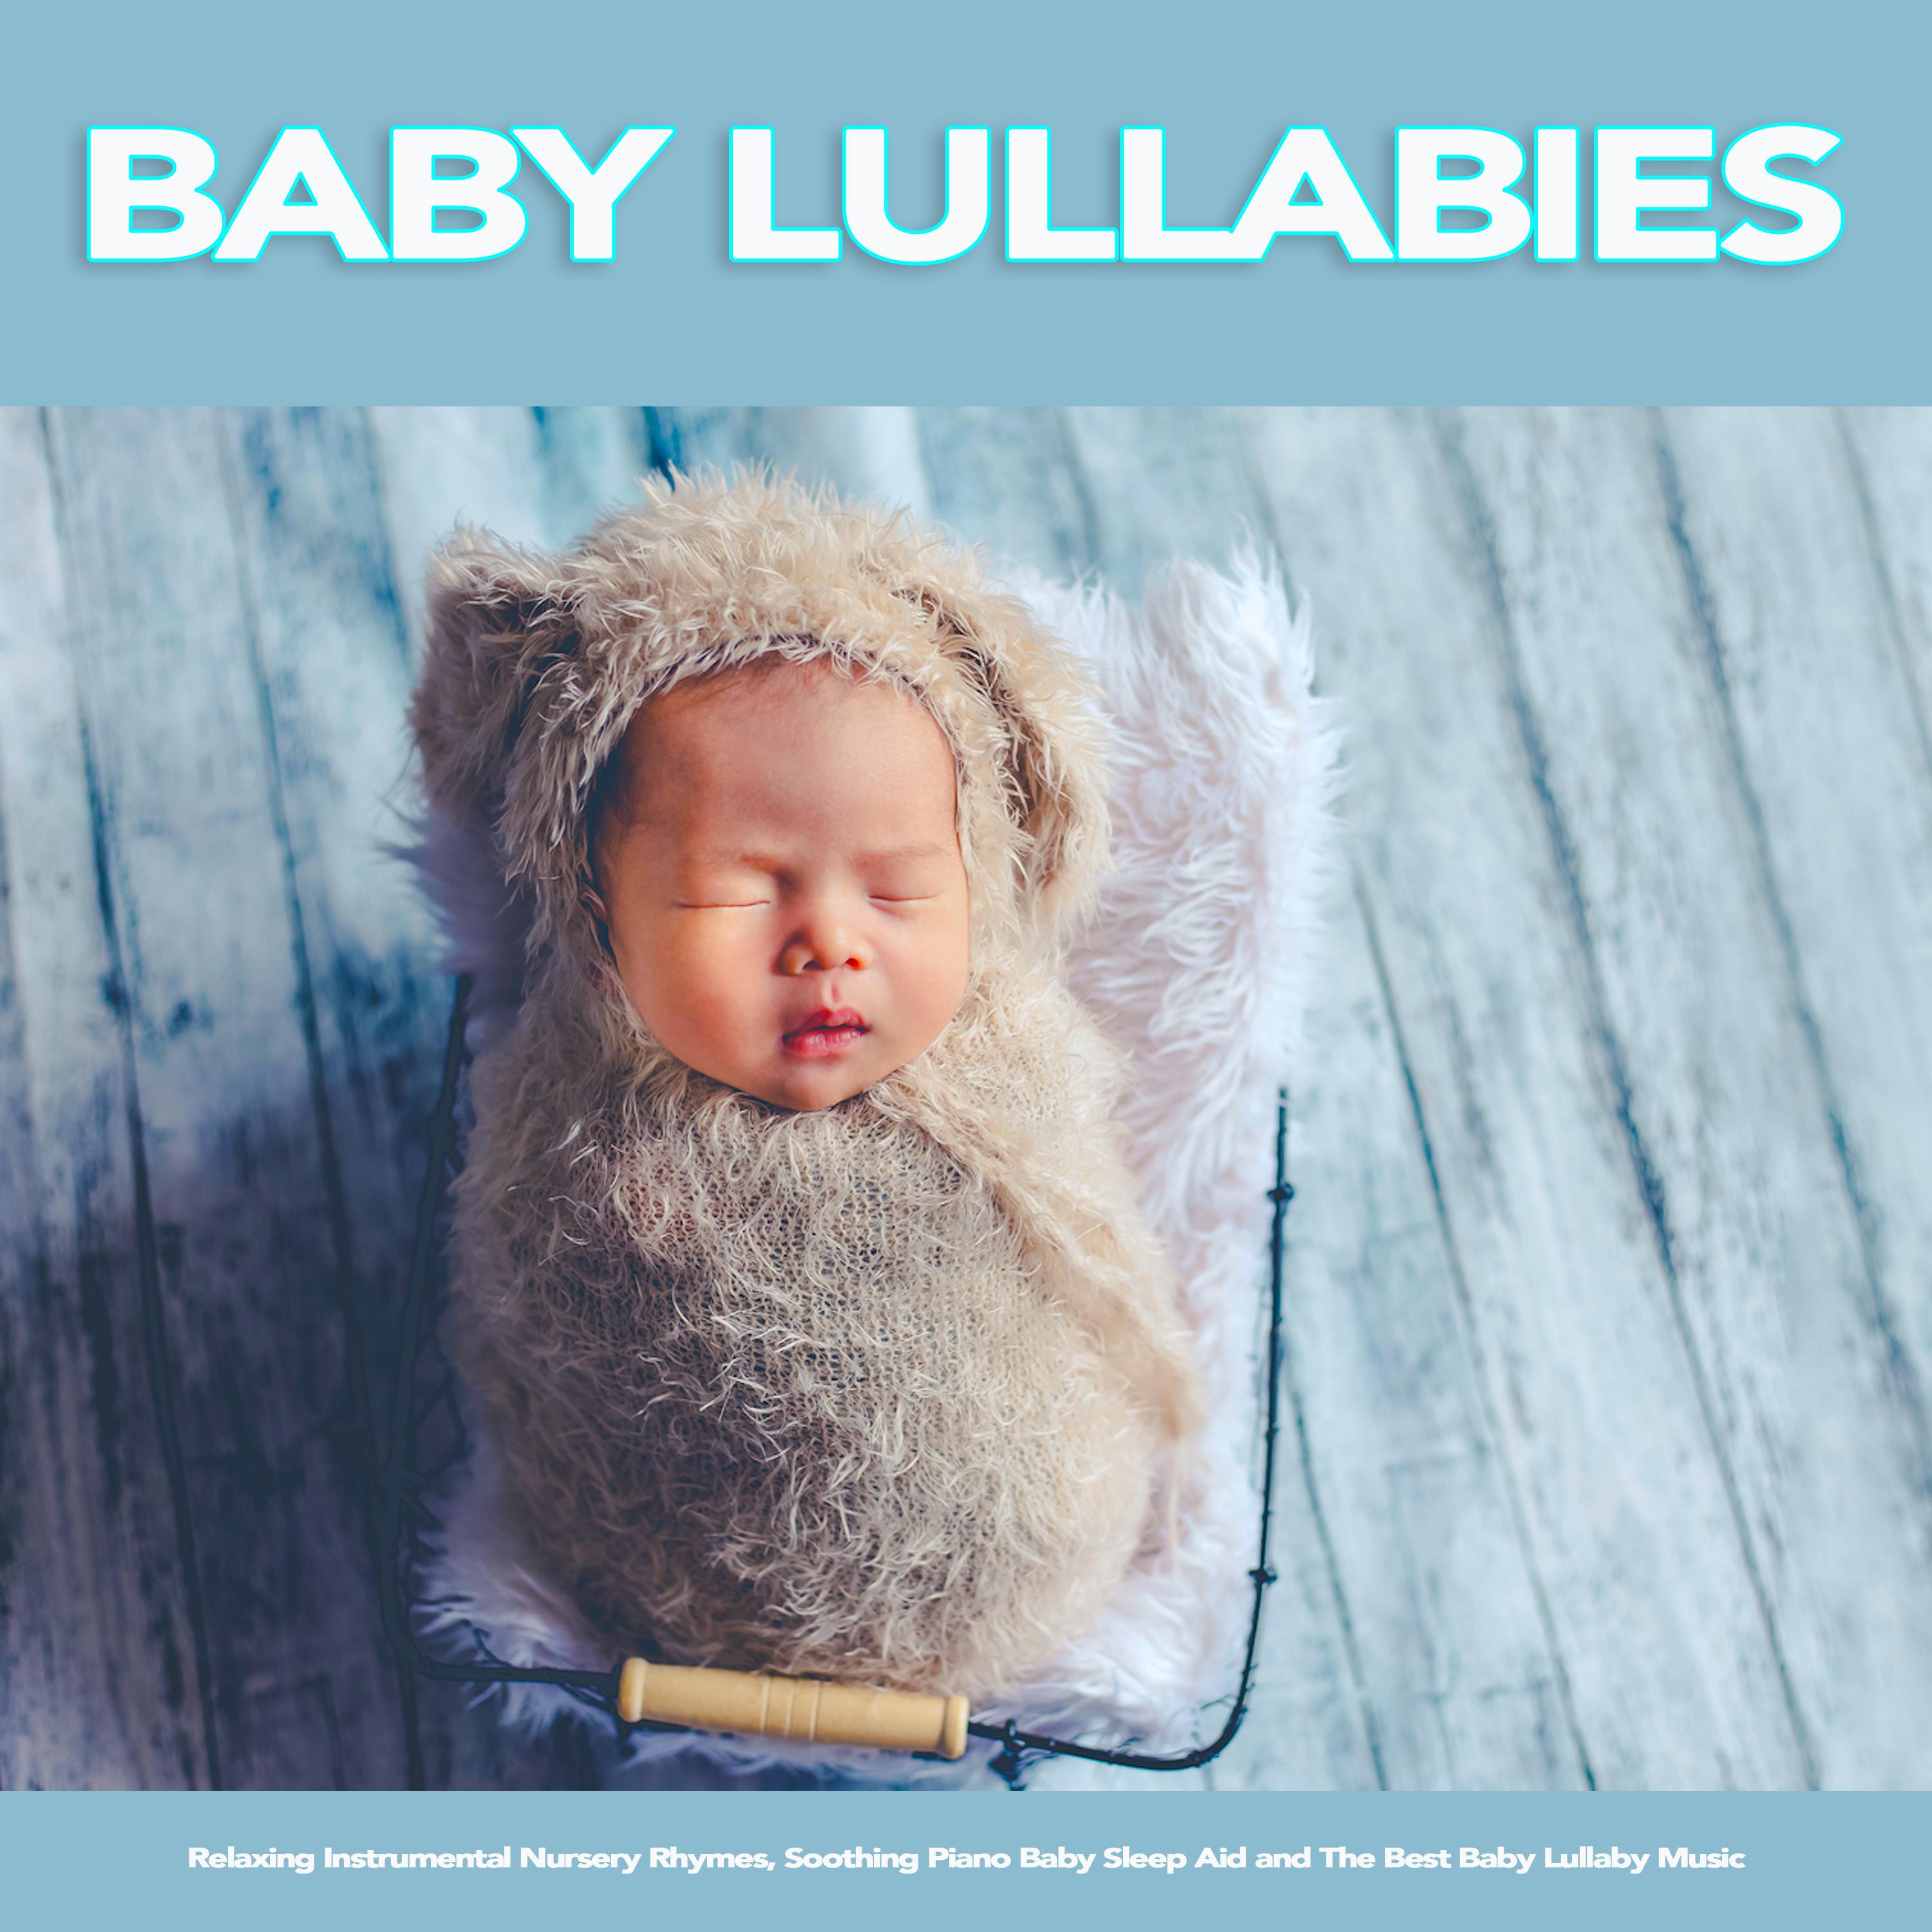 Twinkle Twinkle Little Star - Baby Lullabies and Nursery Rhymes For Baby Sleep